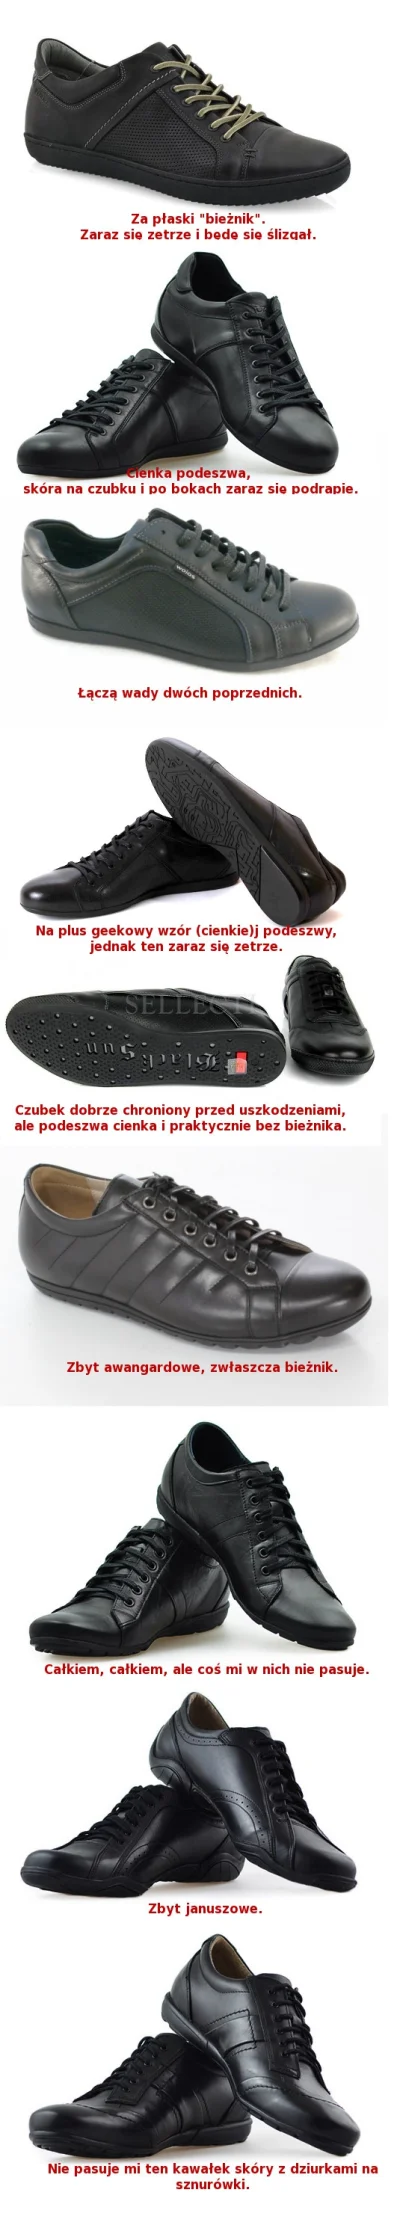 Max_Koluszky - Chcę kupić sobie buty. Mają być:
- czarne,
- ze skóry,
- z wyściółk...